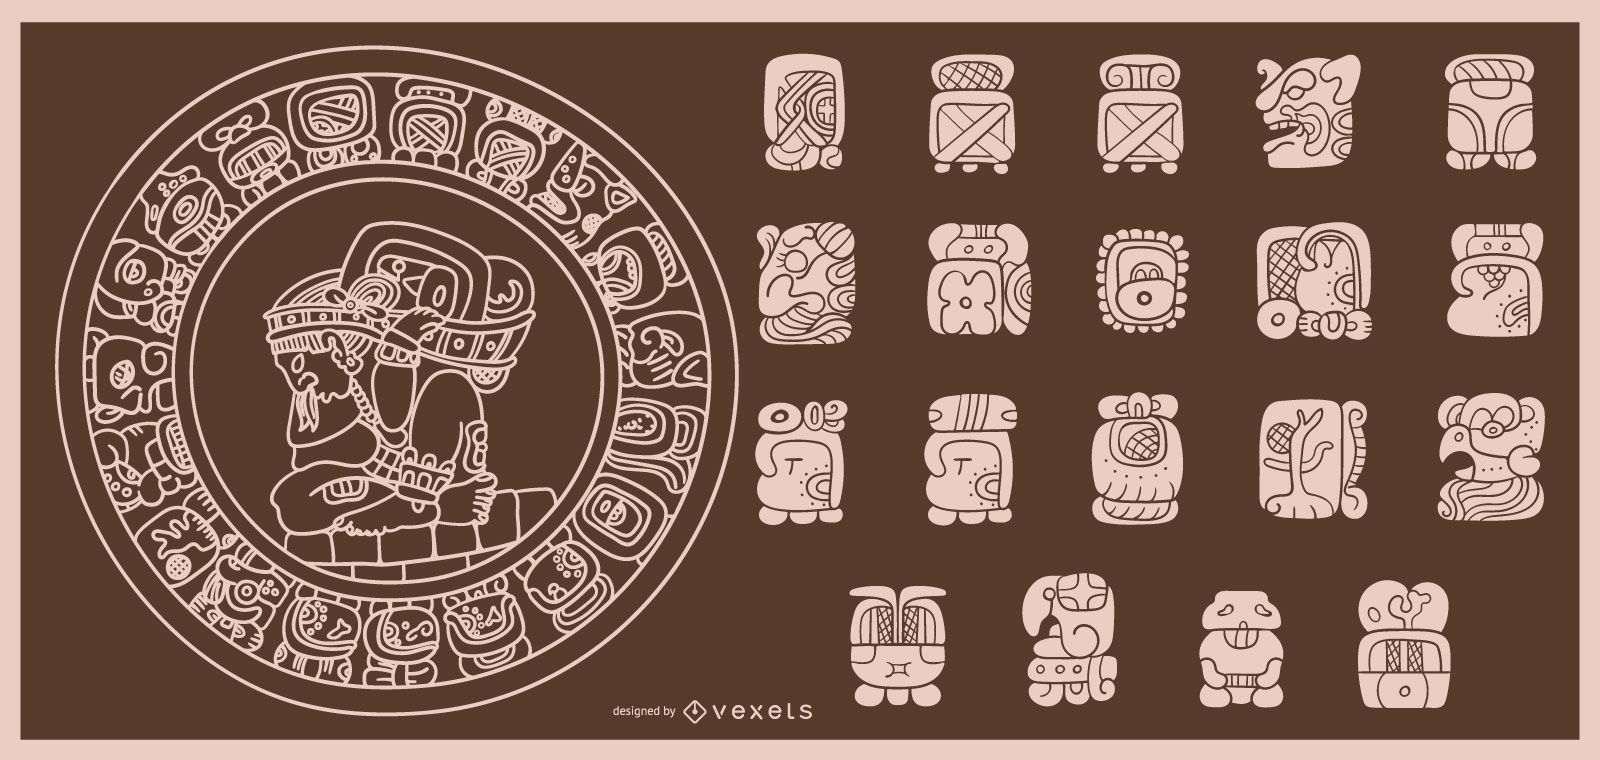 Maya kalender sternzeichen